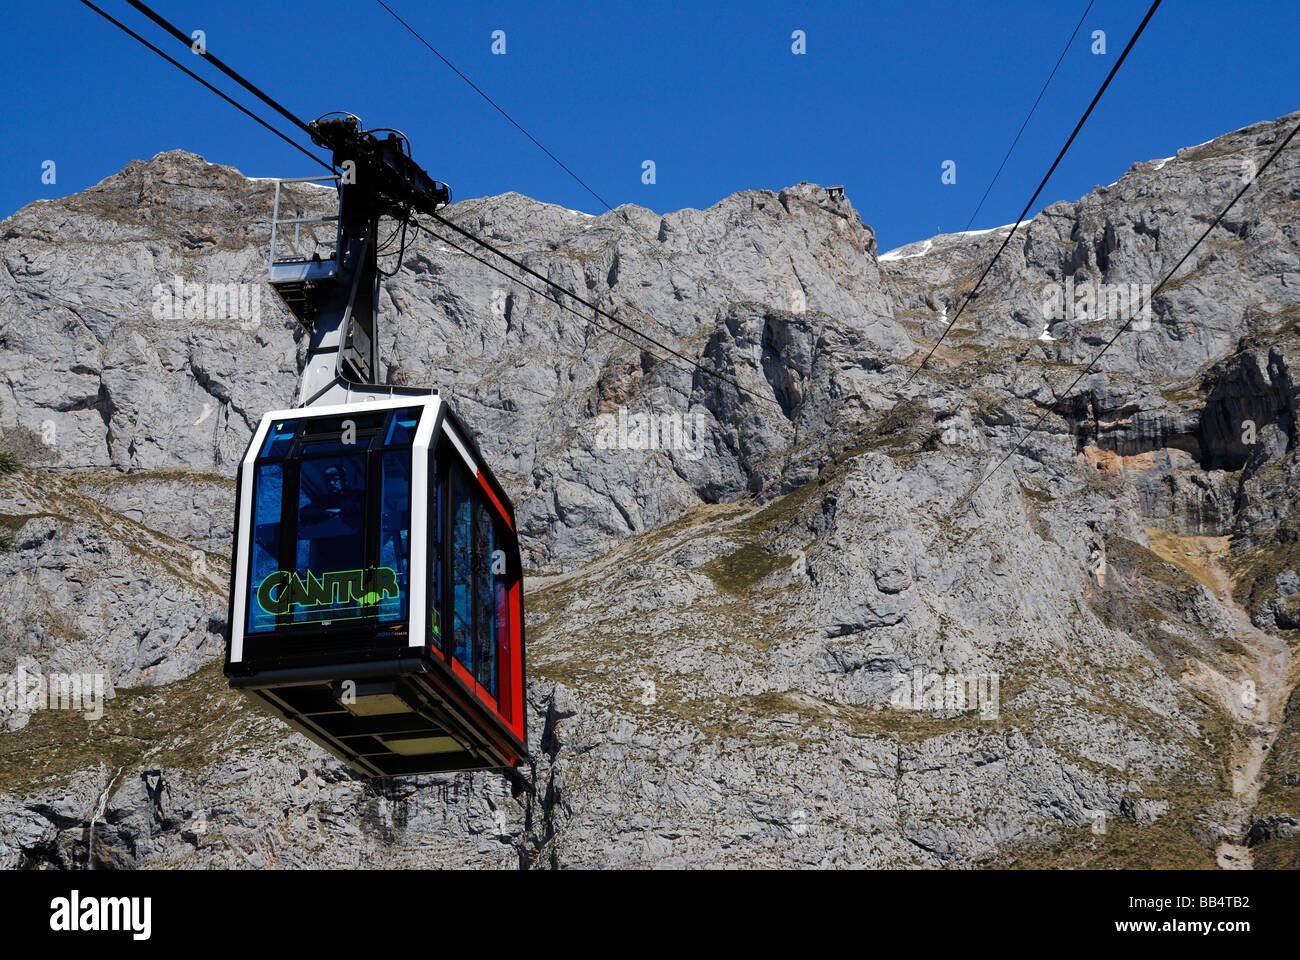 Cable Car, Fuente De, Picos de Europa mountains, Spain Stock Photo